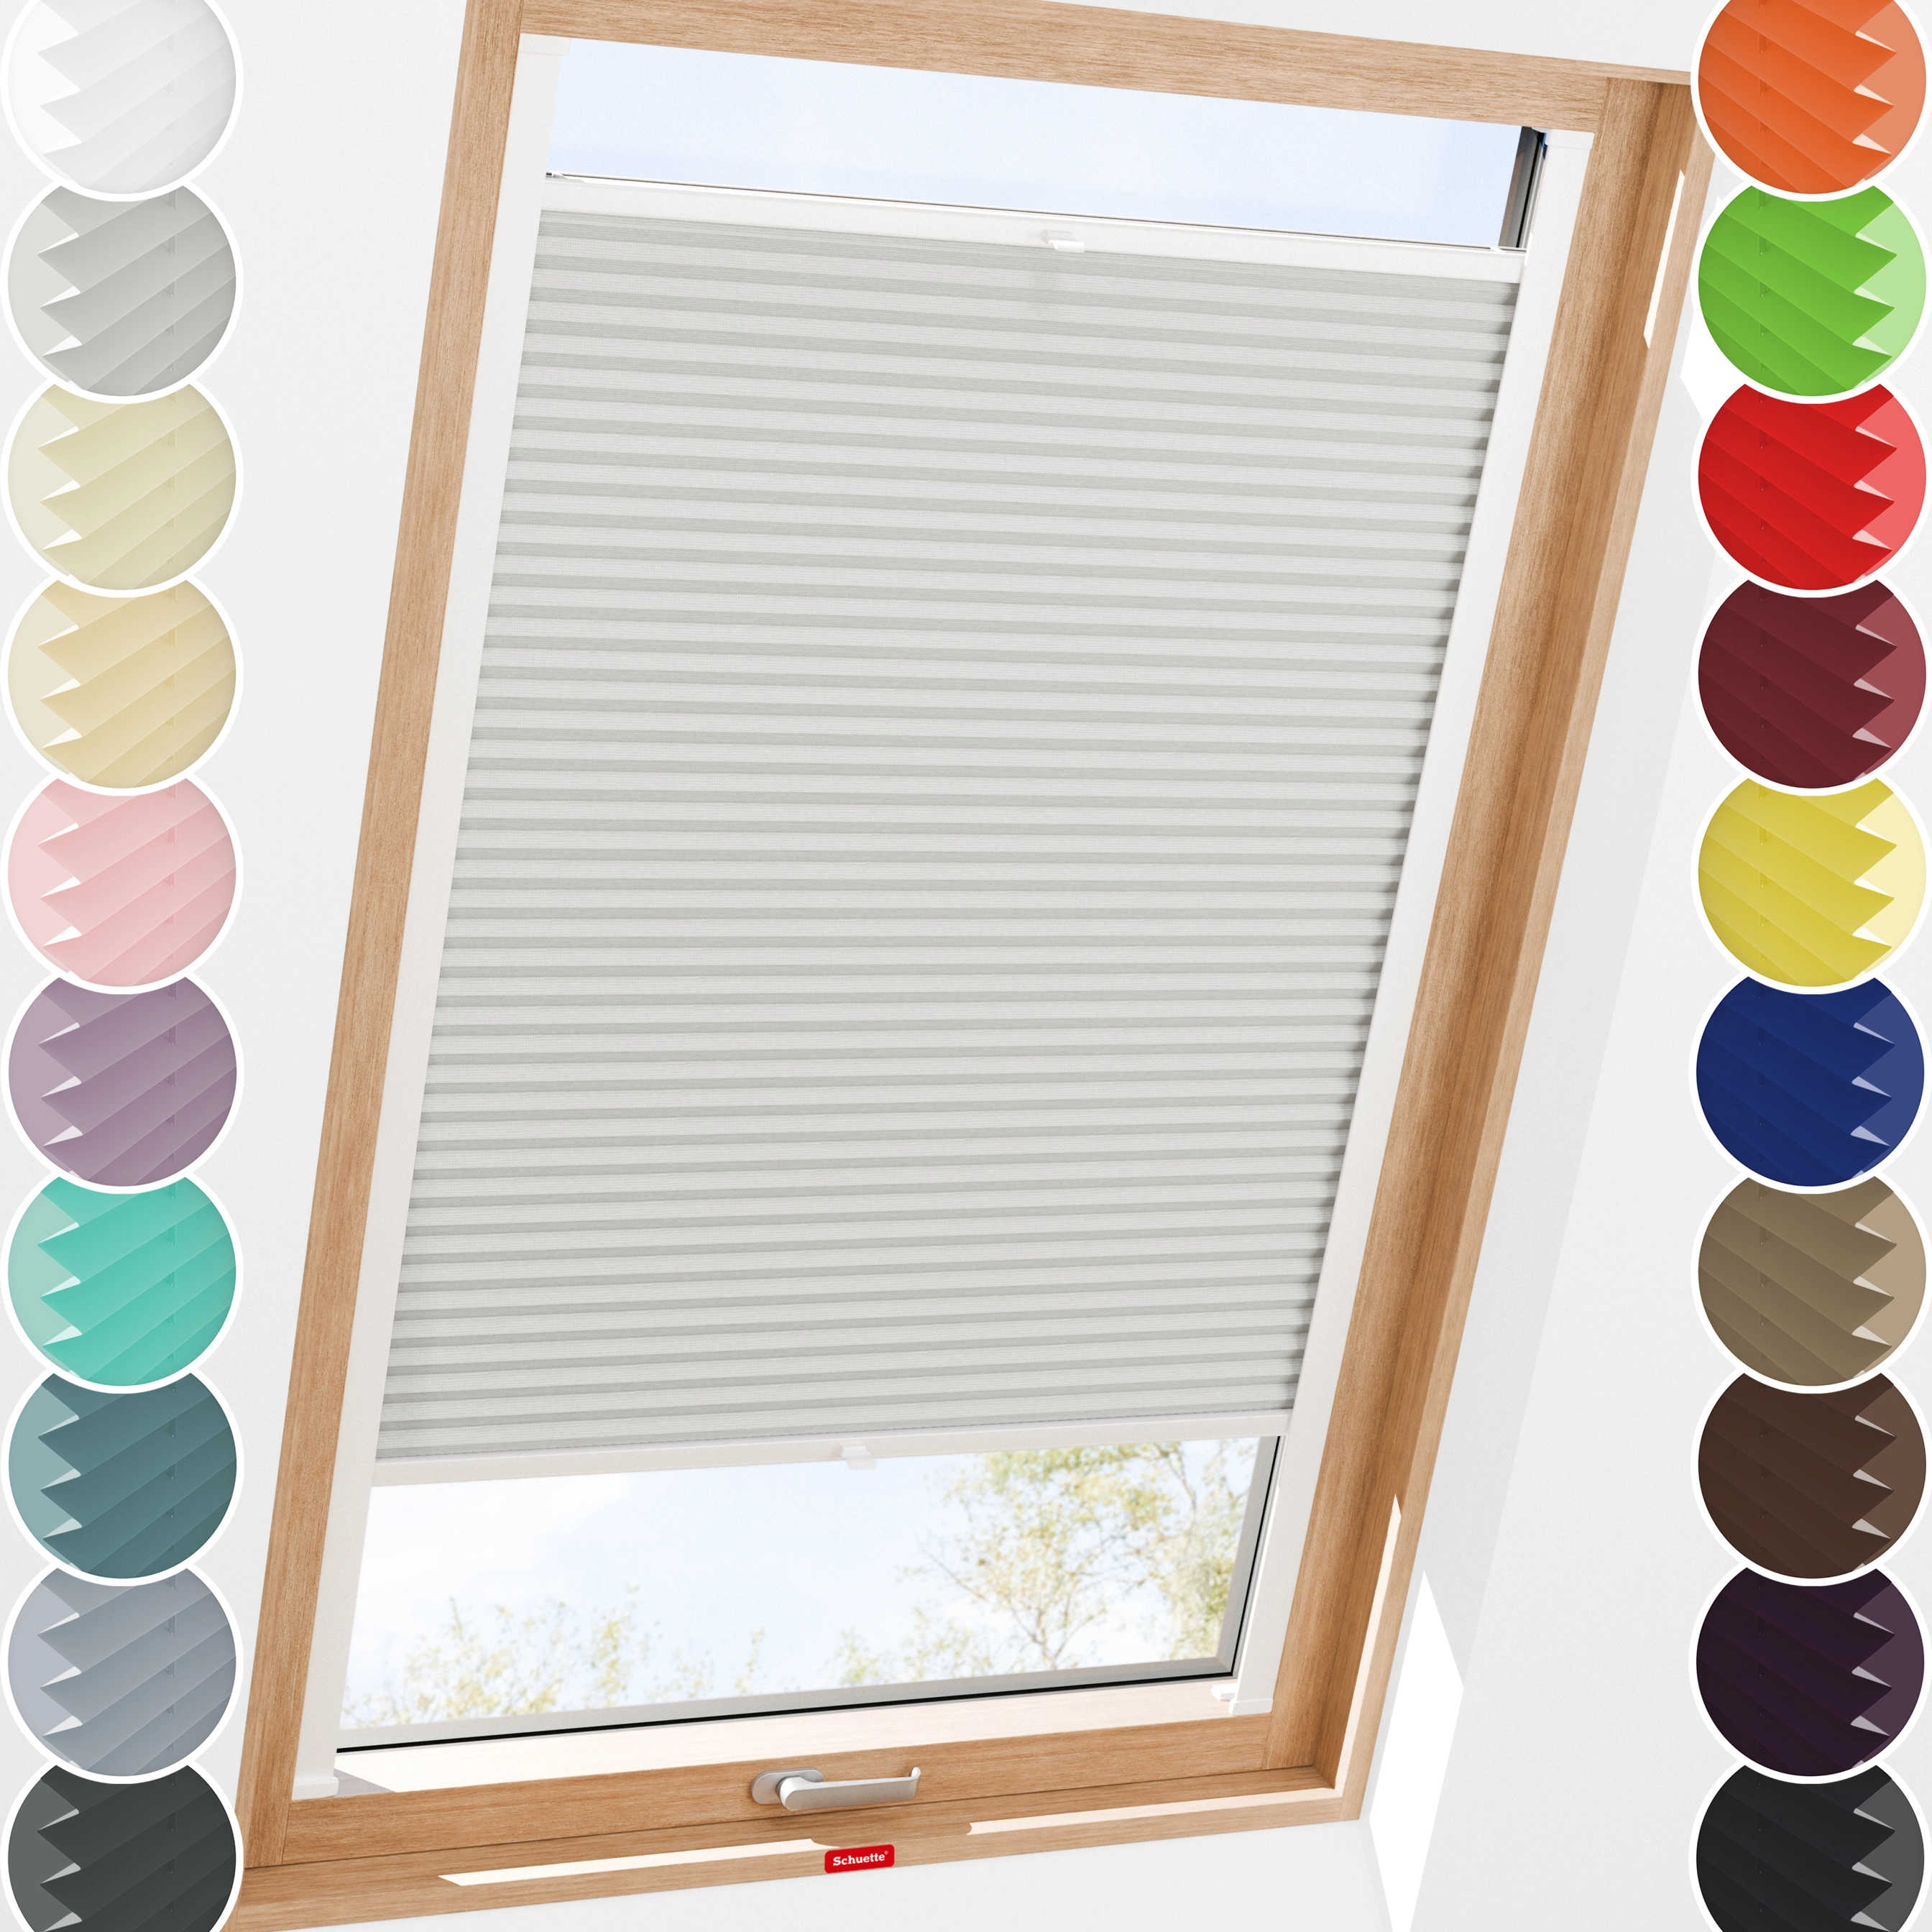 Schuette® Dachfenster Plissee nach Maß • Premium Kollektion: A Way Home (Silber) • Profilfarbe: Weiß